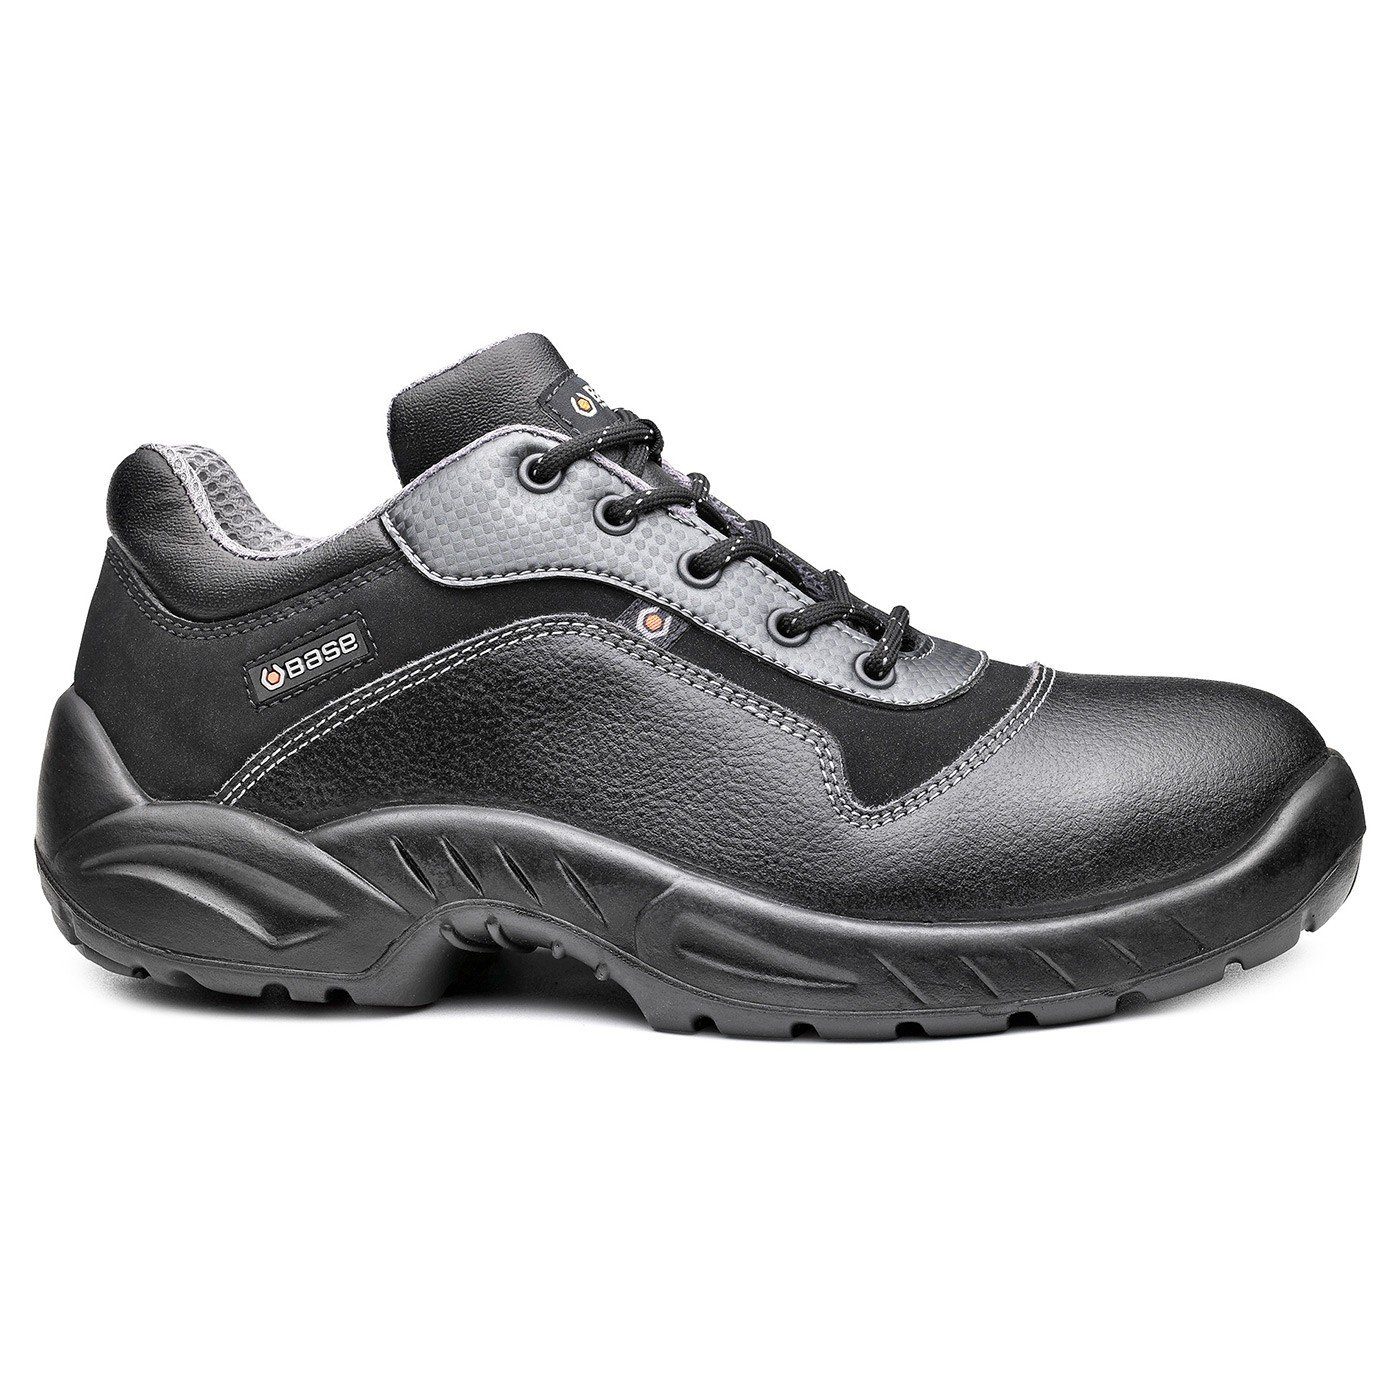 Base Footwear Sicherheitsschuhe B0166 - Etoile S3 SRC schwarz  Sicherheitsschuh wasserdicht, durchtrittsicher, Zehenschutz - Stahlkappe,  EN ISO 20345 | Sicherheitsschuhe